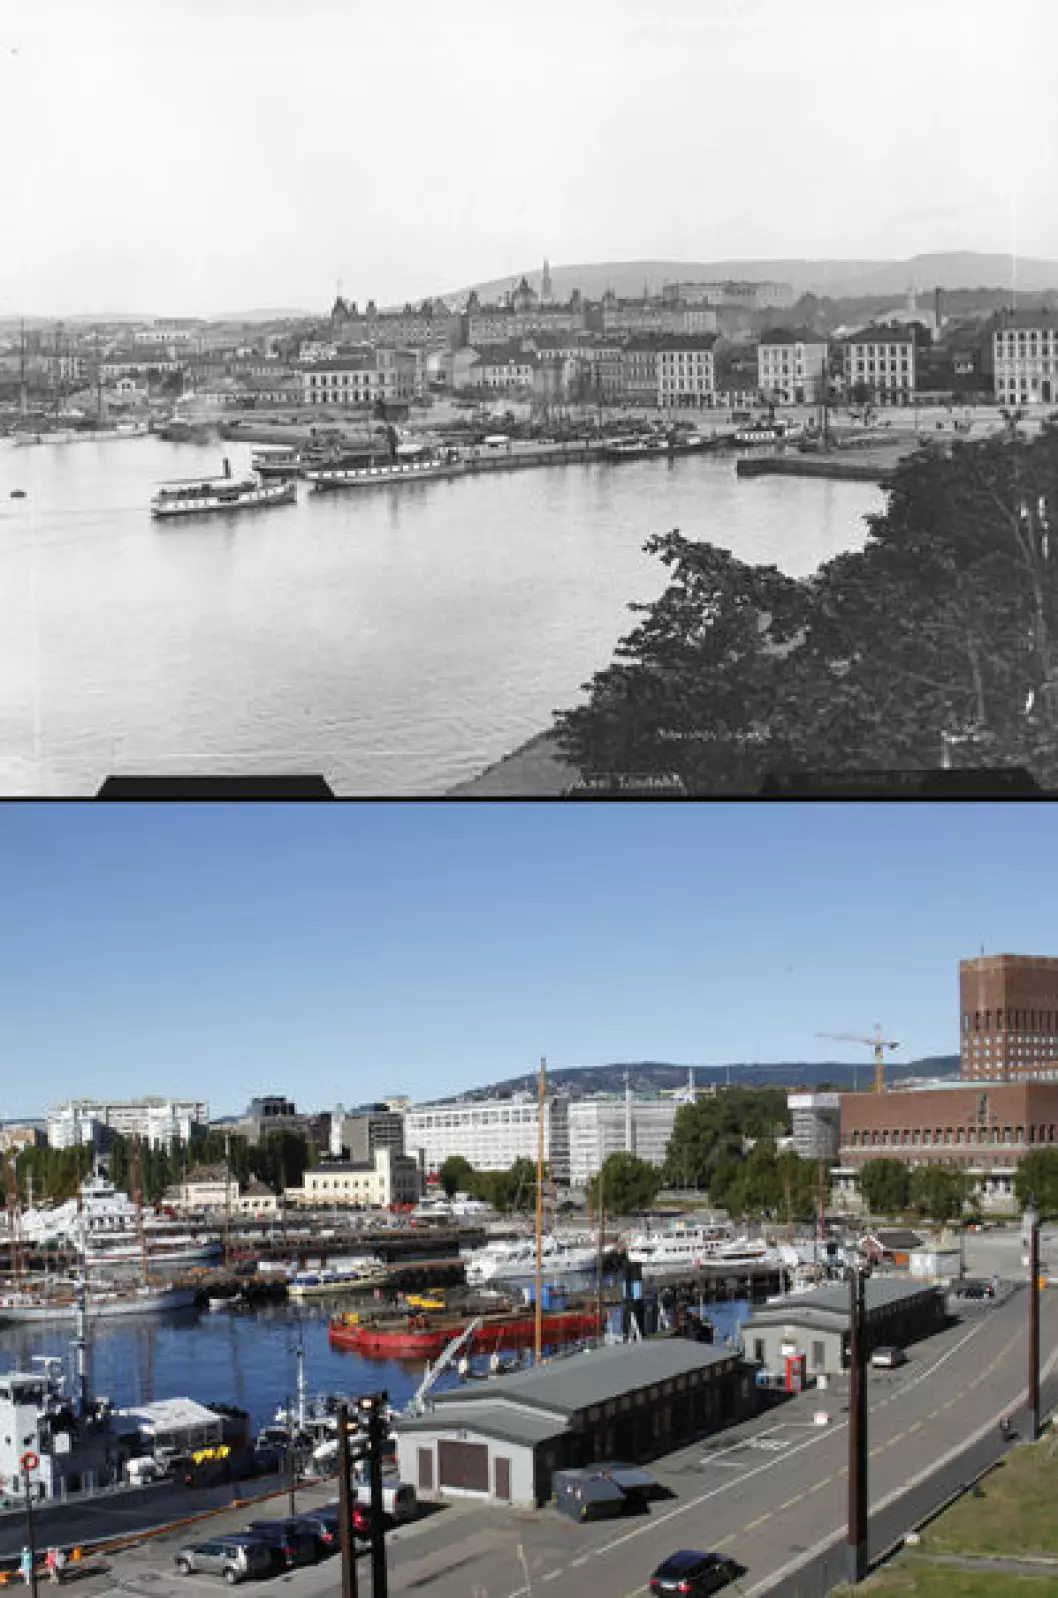 Ca. 1888 og 2013: Pipervika og Rådhuskaia i Oslo. Foto: Axel Lindahl/Oscar Puschmann